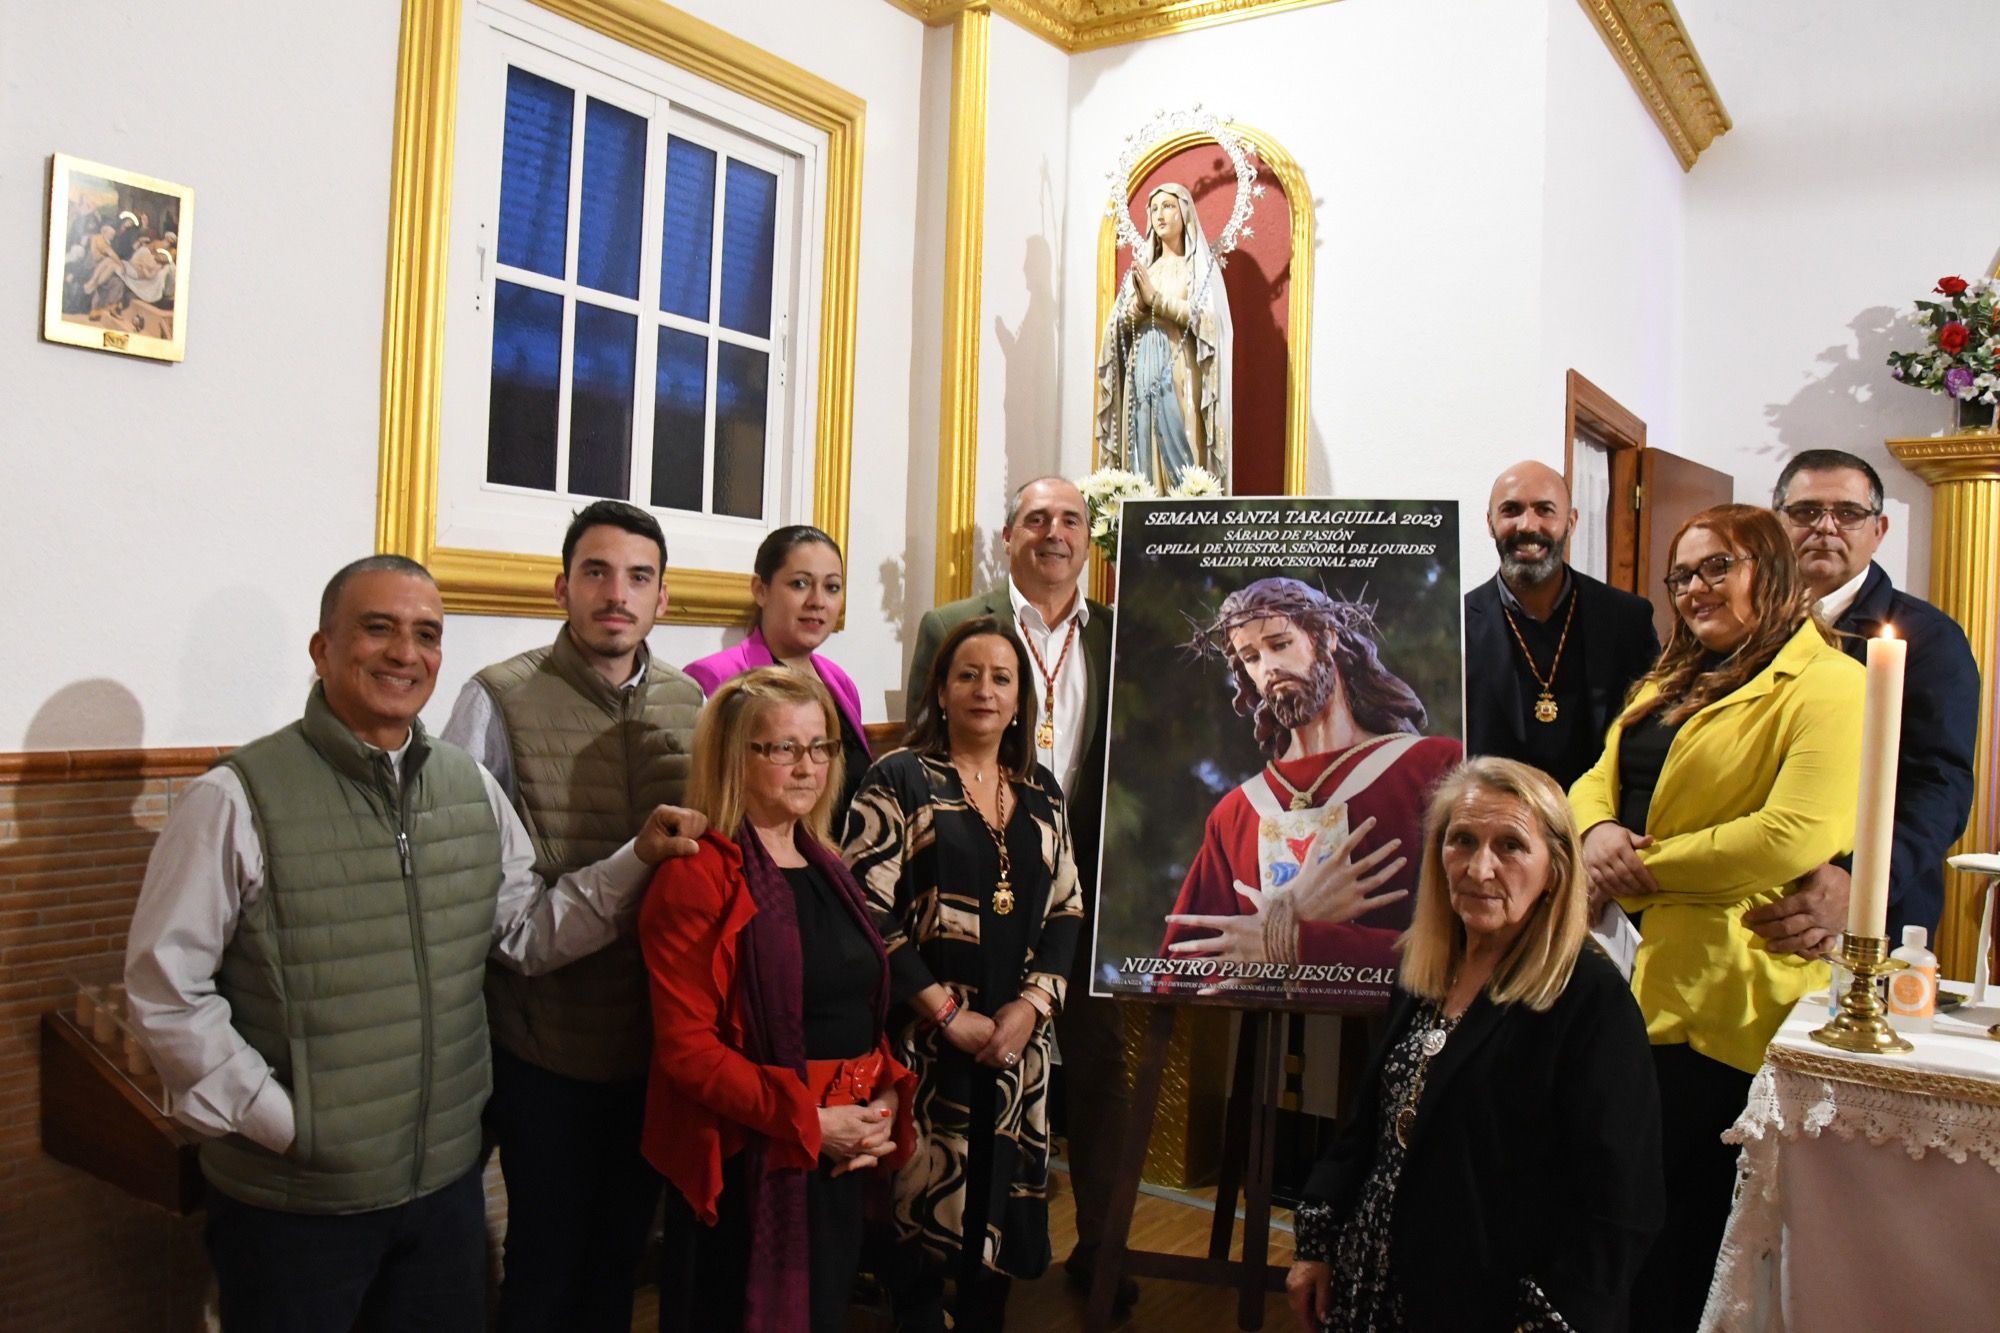 Presentado el cartel de la procesión de Nuestro Padre Jesús Cautivo en Taraguilla